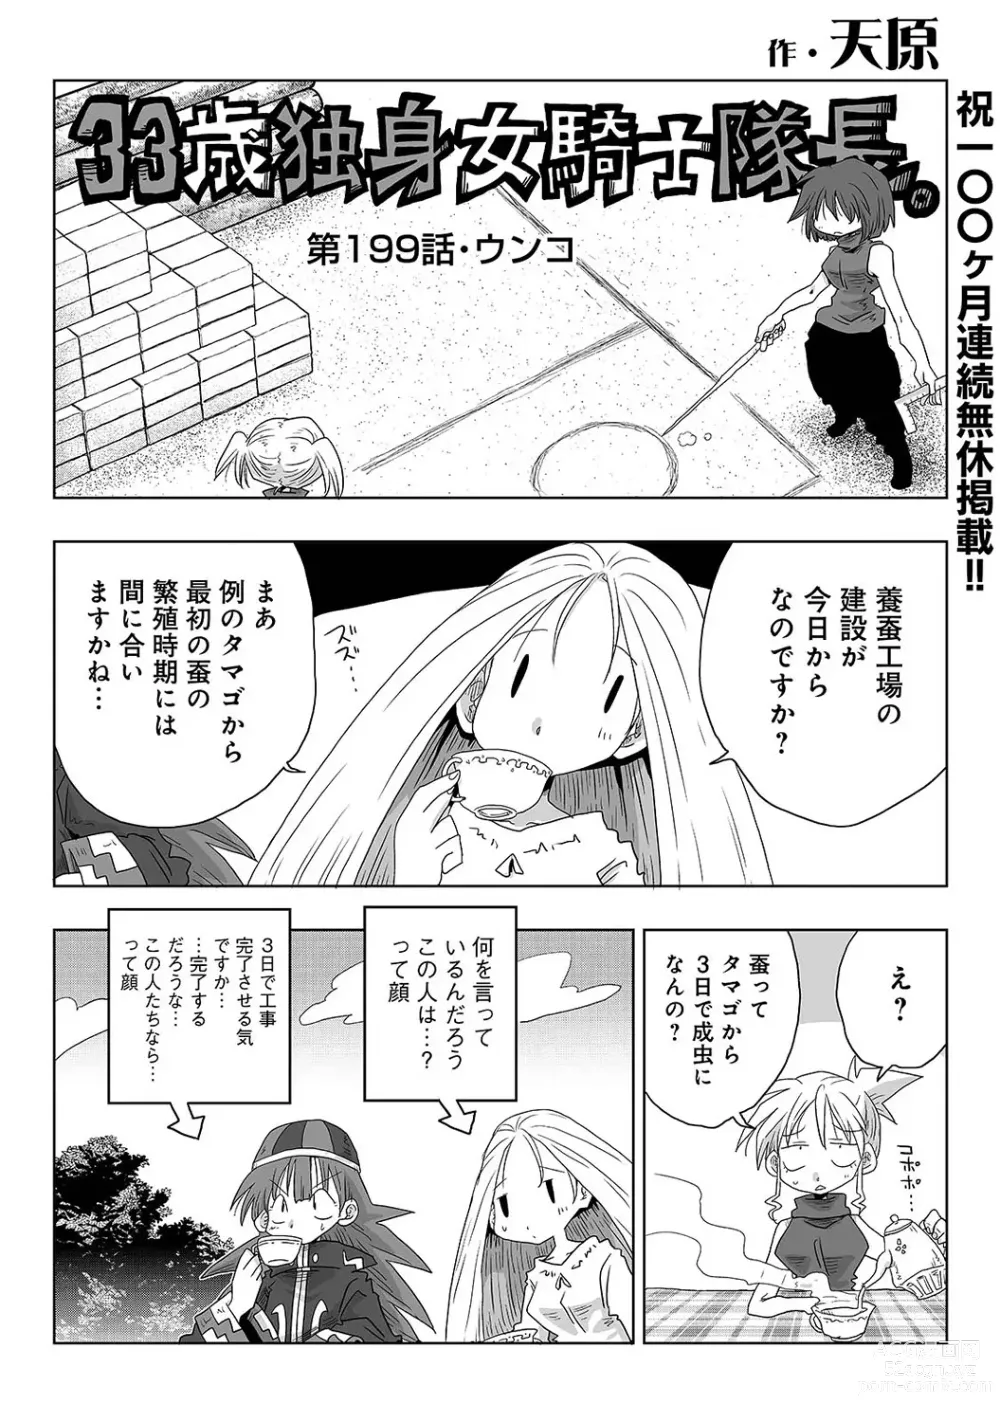 Page 16 of manga COMIC Ananga Ranga Vol. 103